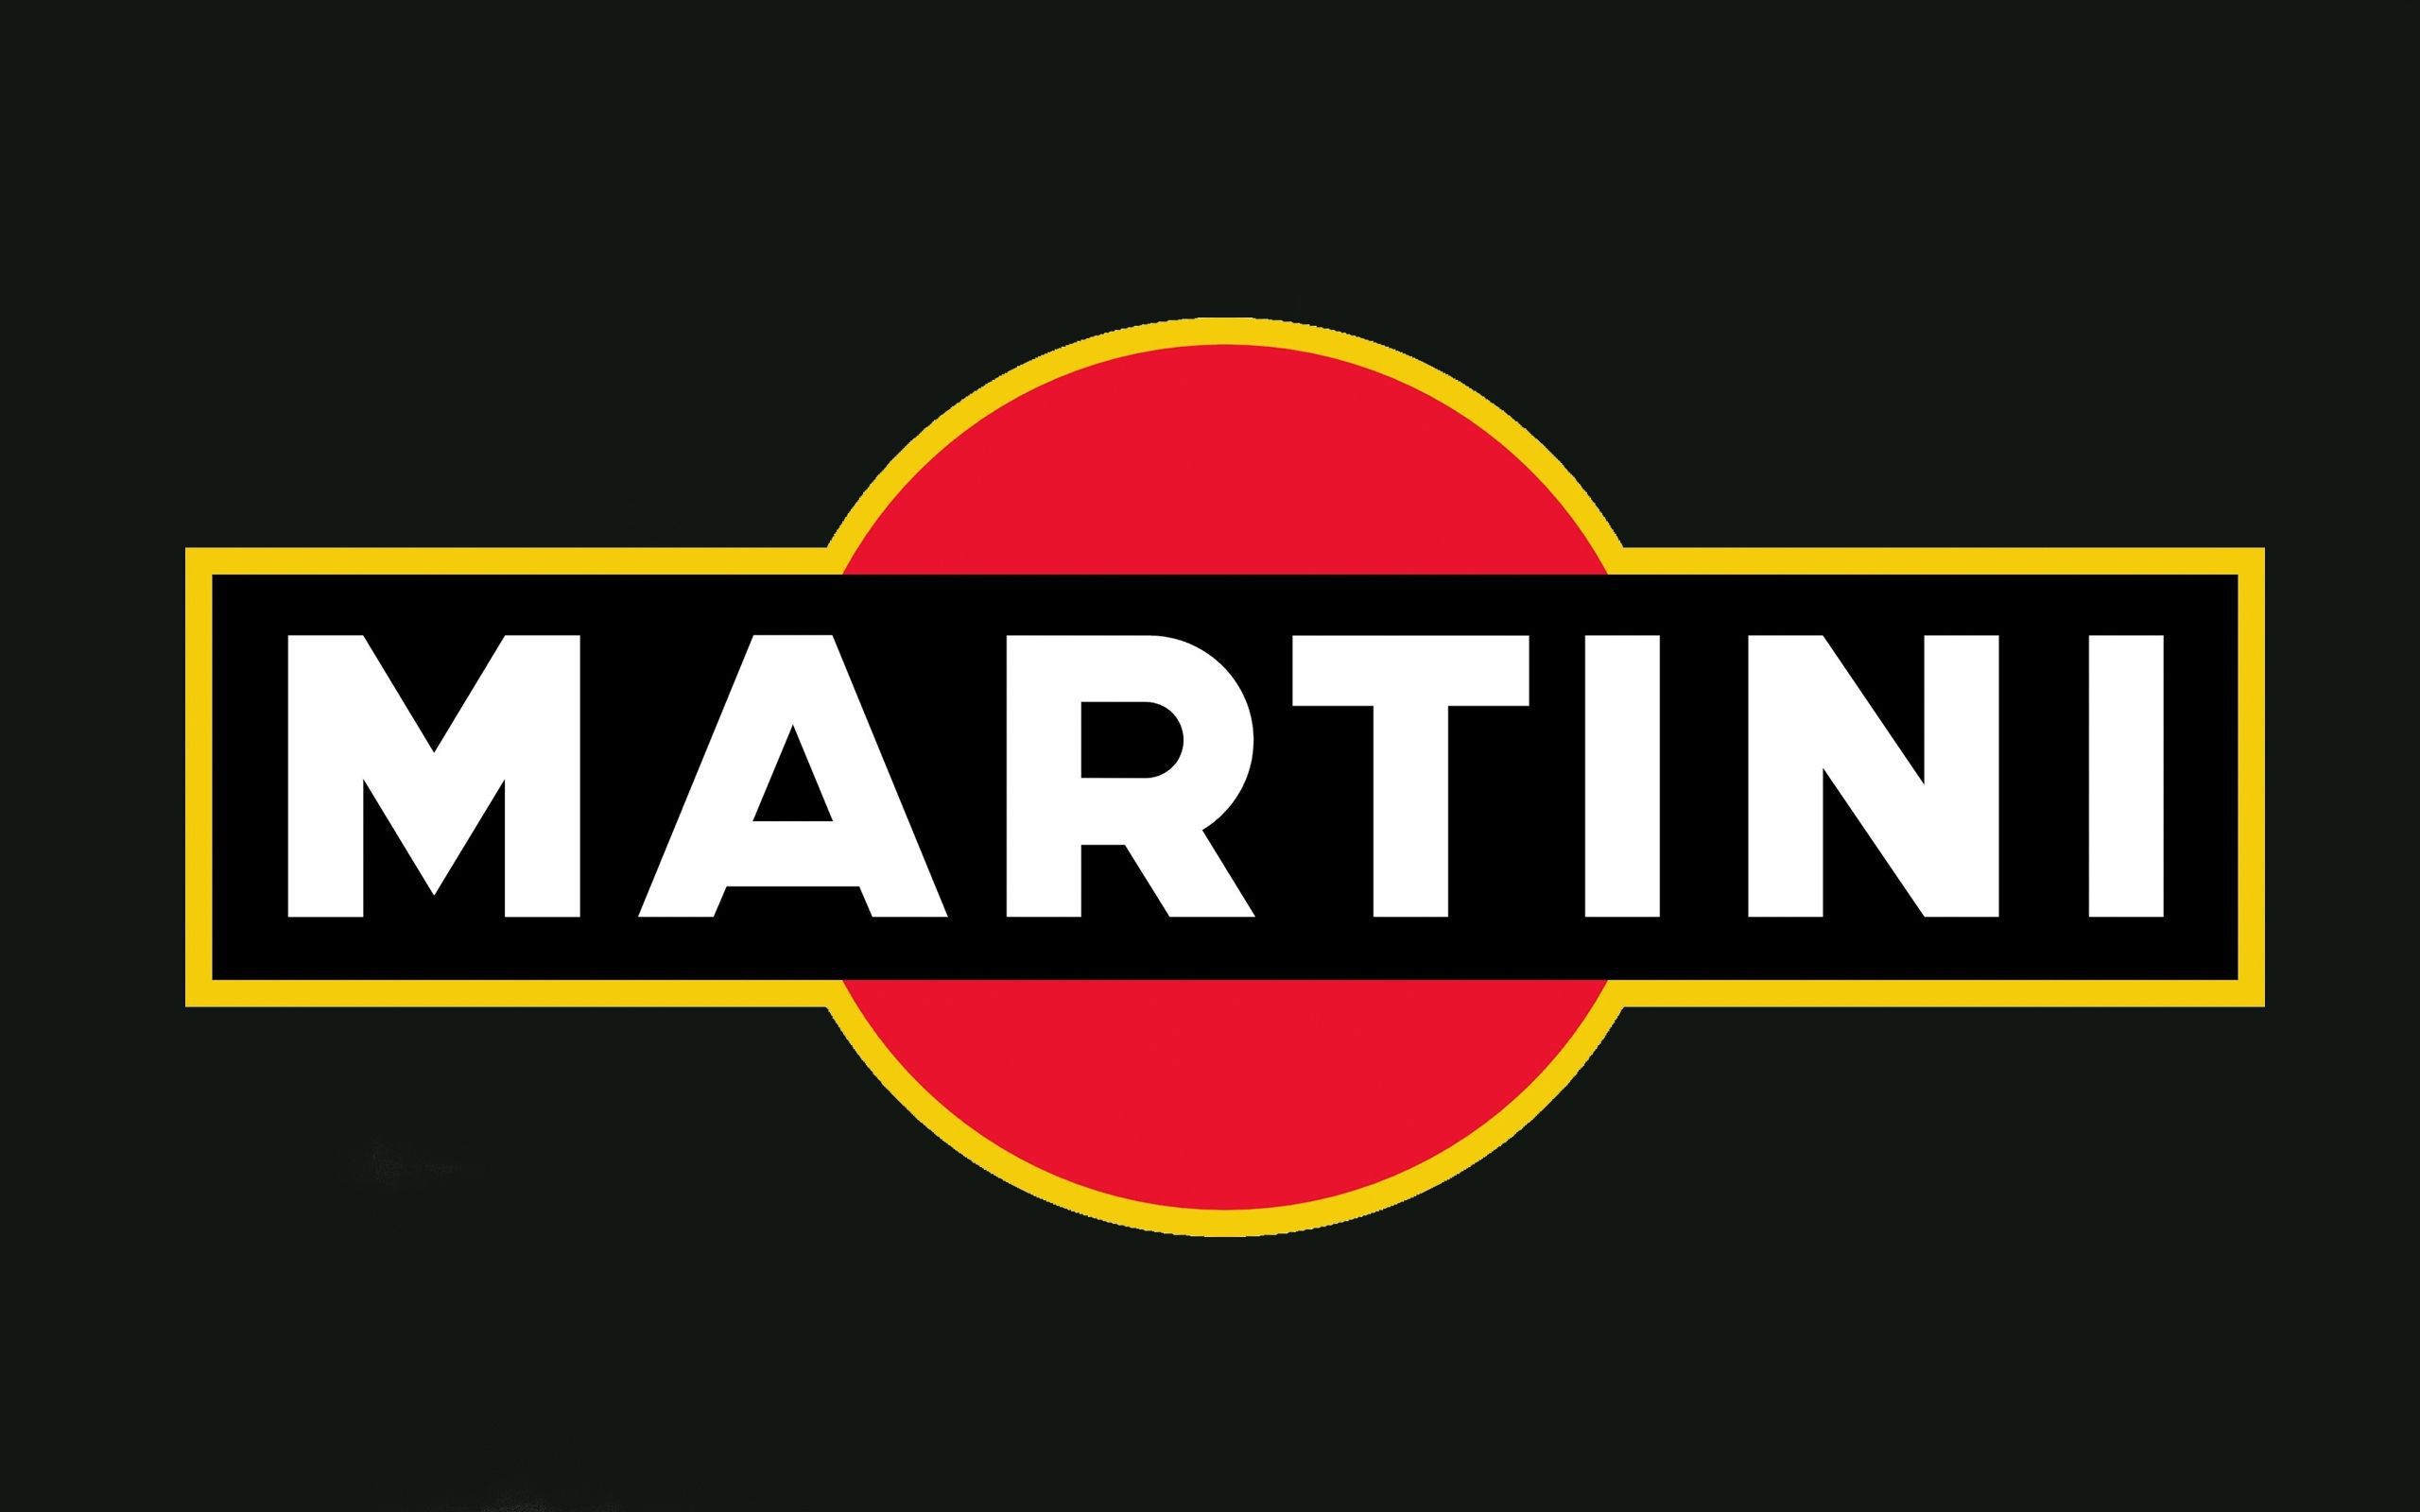 Martini Widescreen